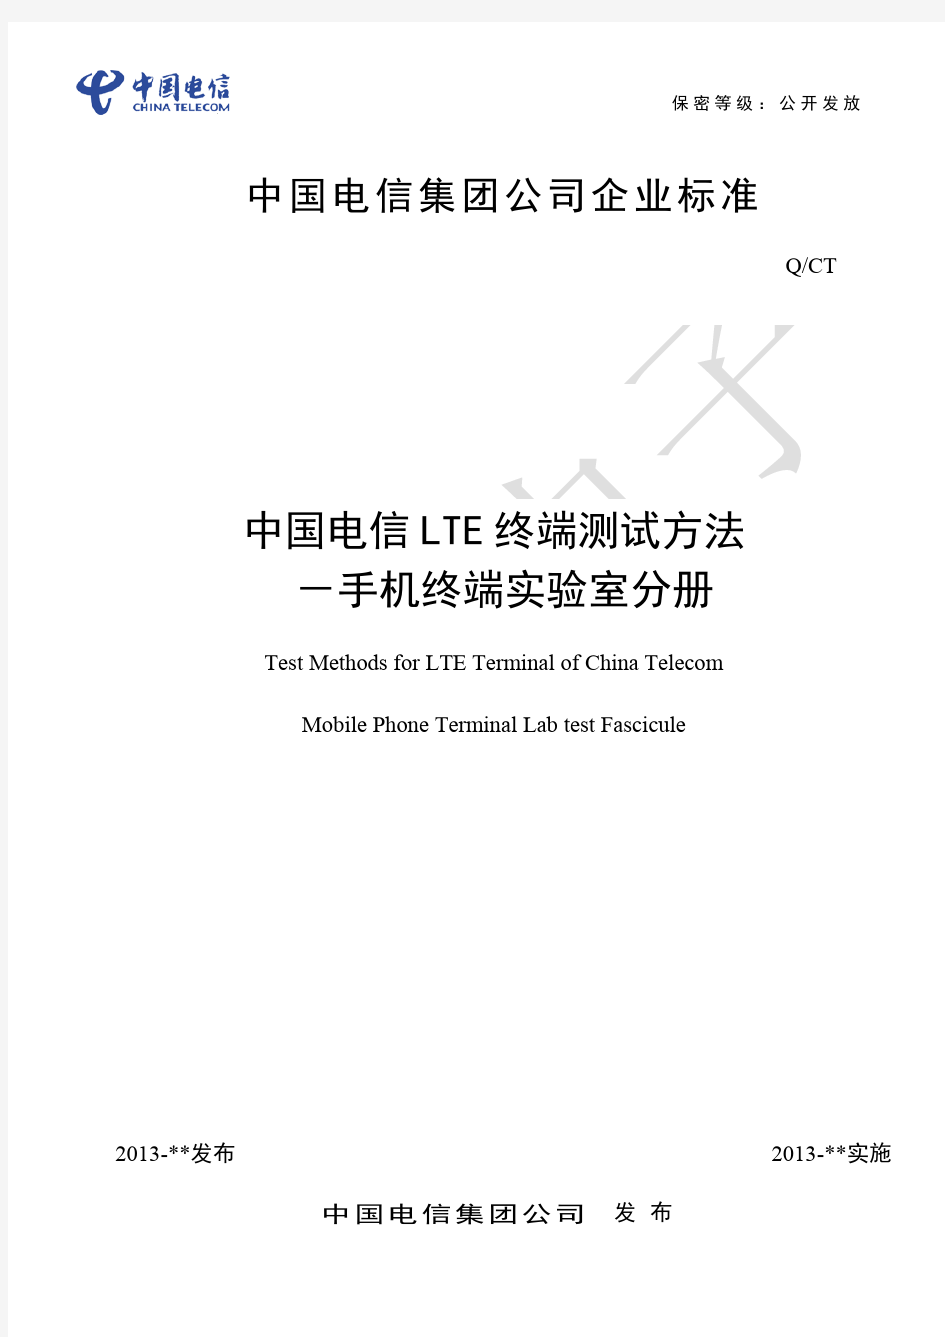 中国电信LTE终端测试方法-手机终端实验室分册